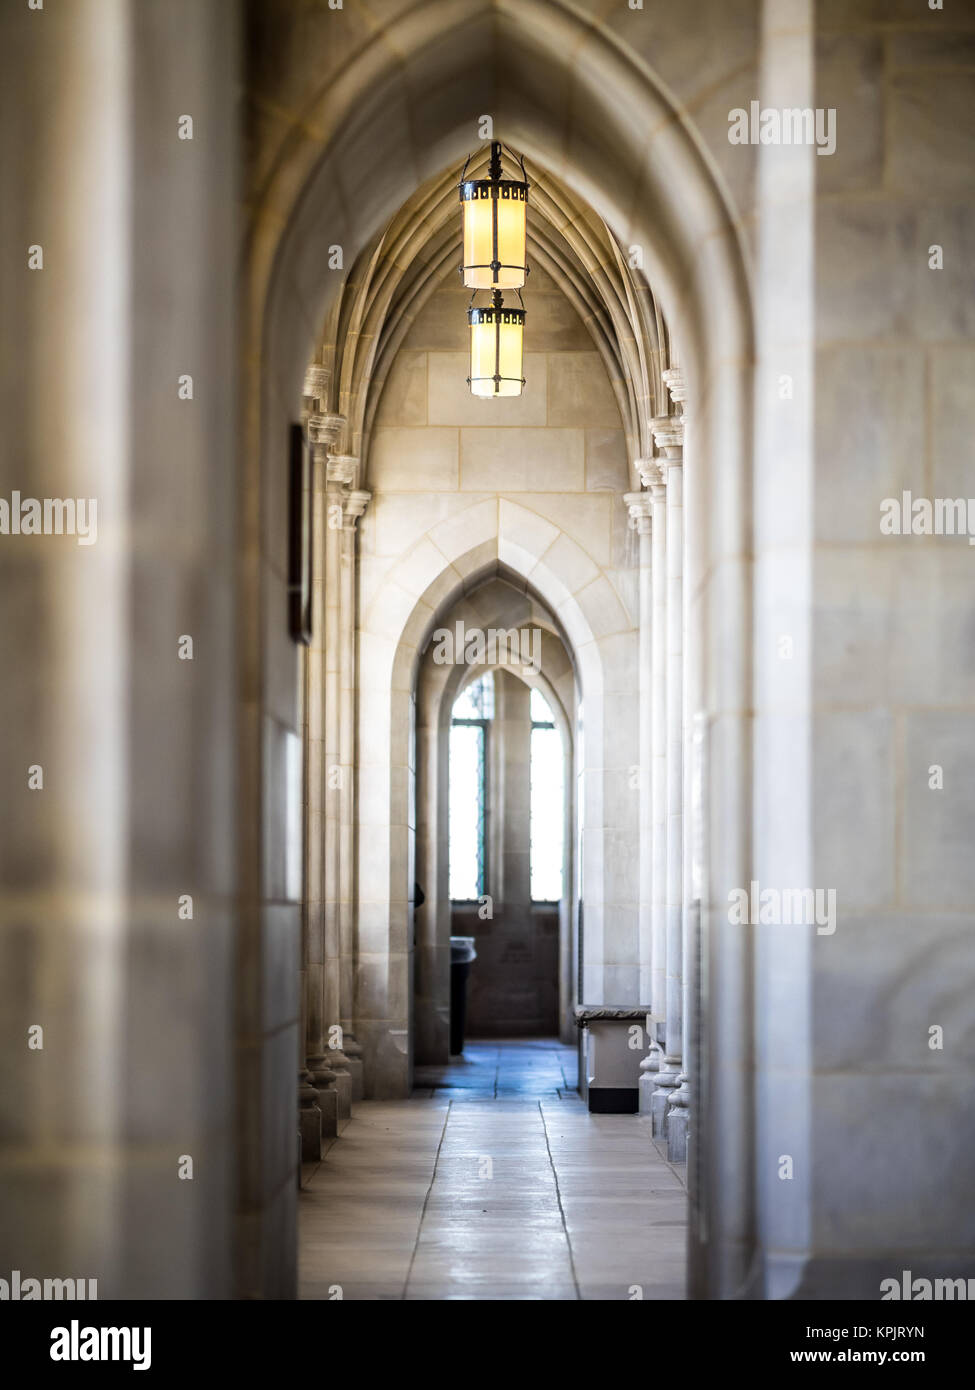 Éclairage intérieur de la cathédrale nationale de Washington. La cathédrale est une église située à Washington, D.C. Banque D'Images